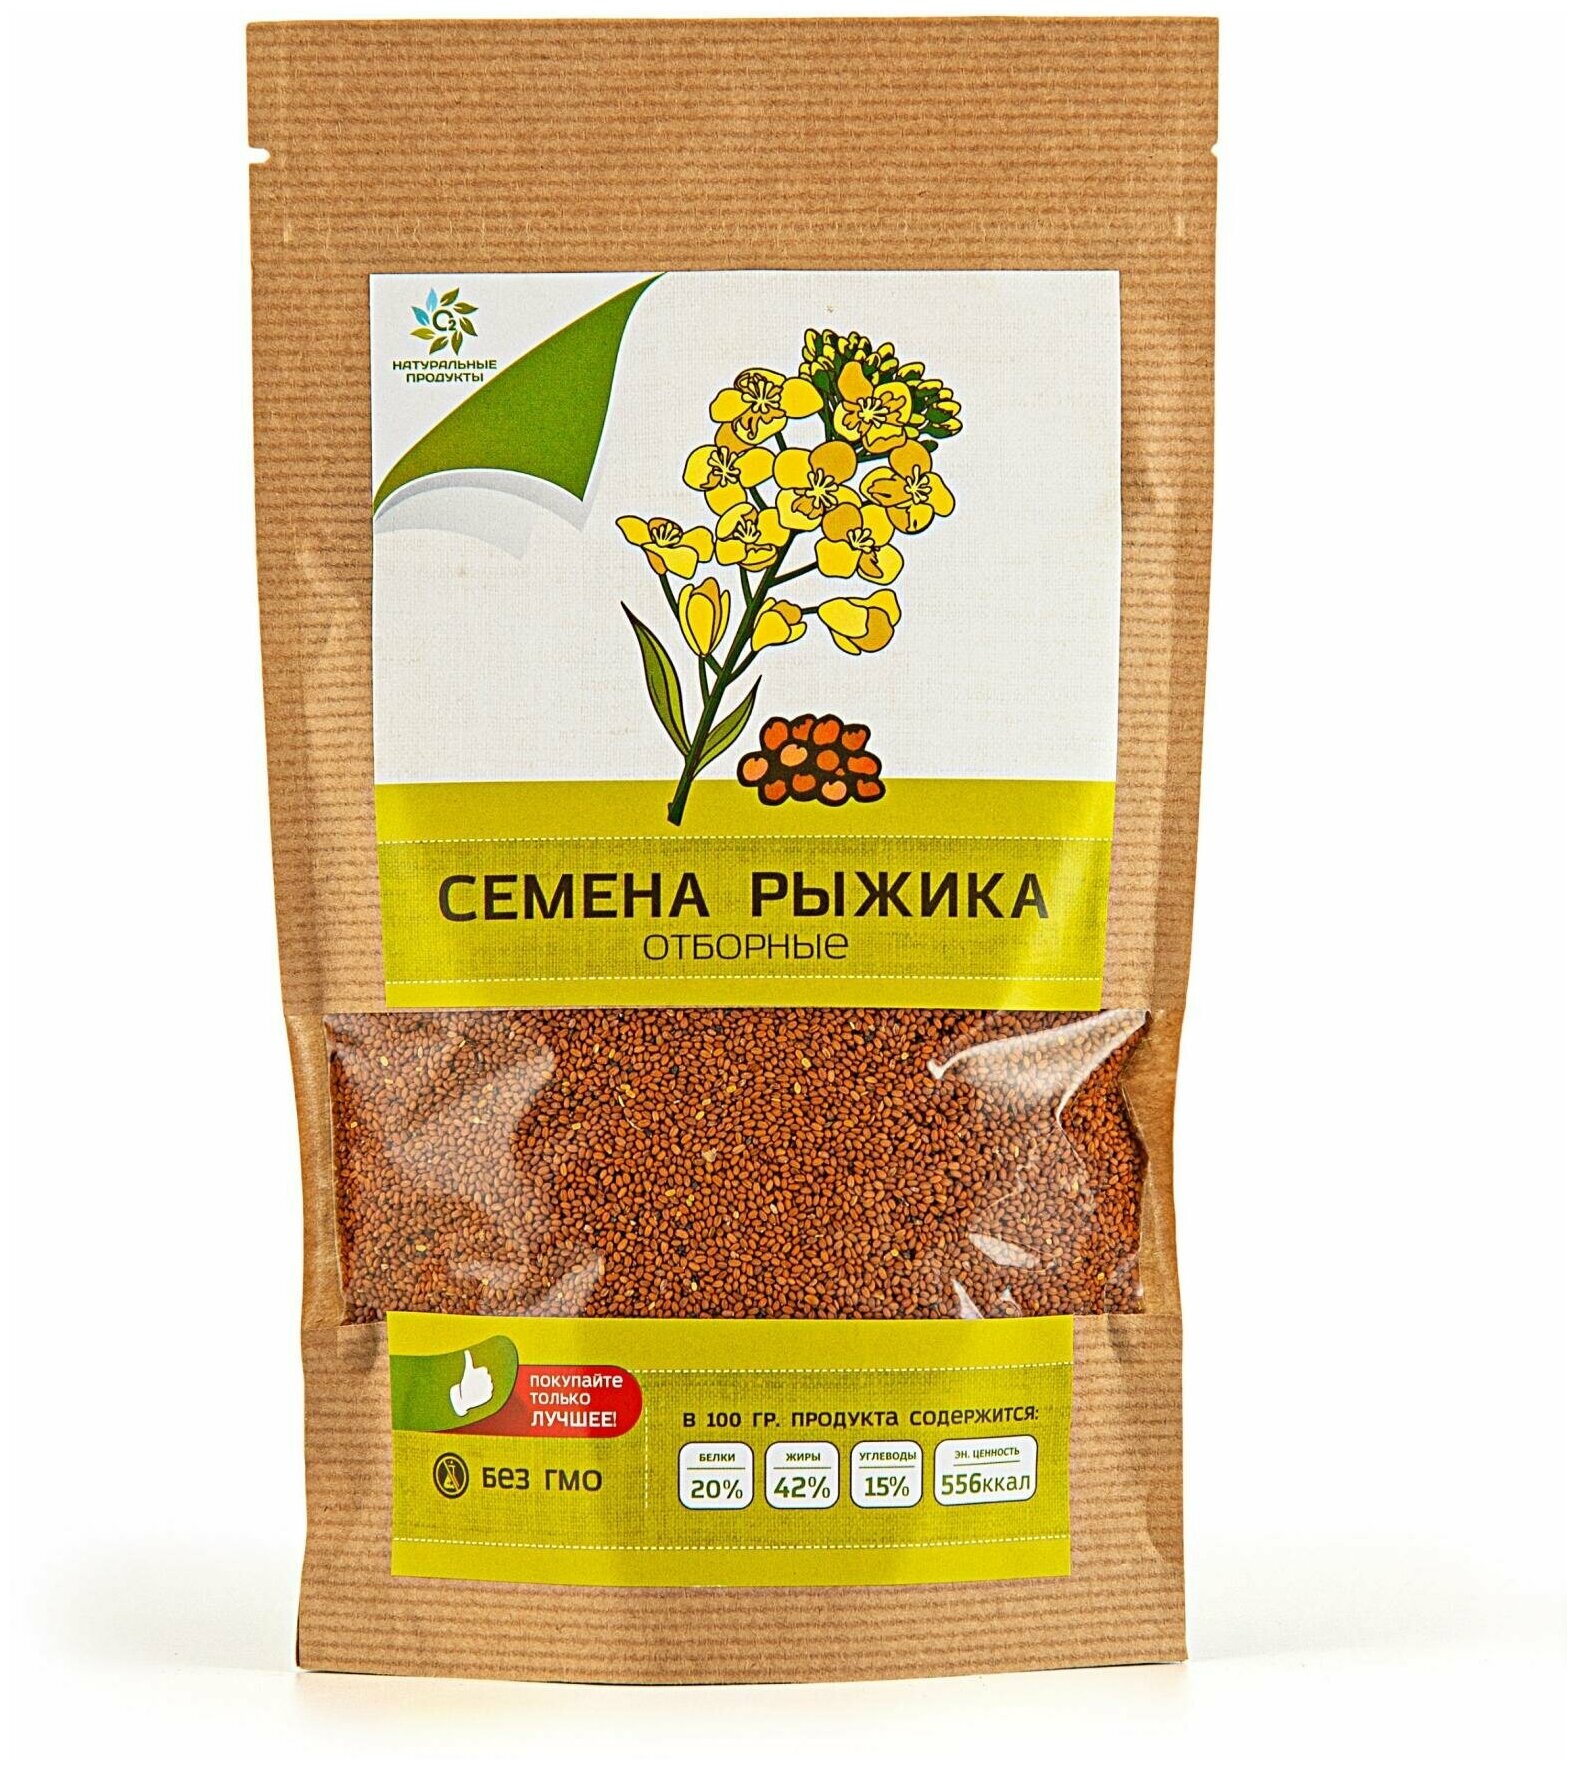 Семена рыжика отборные (Натуральные продукты), 250 г